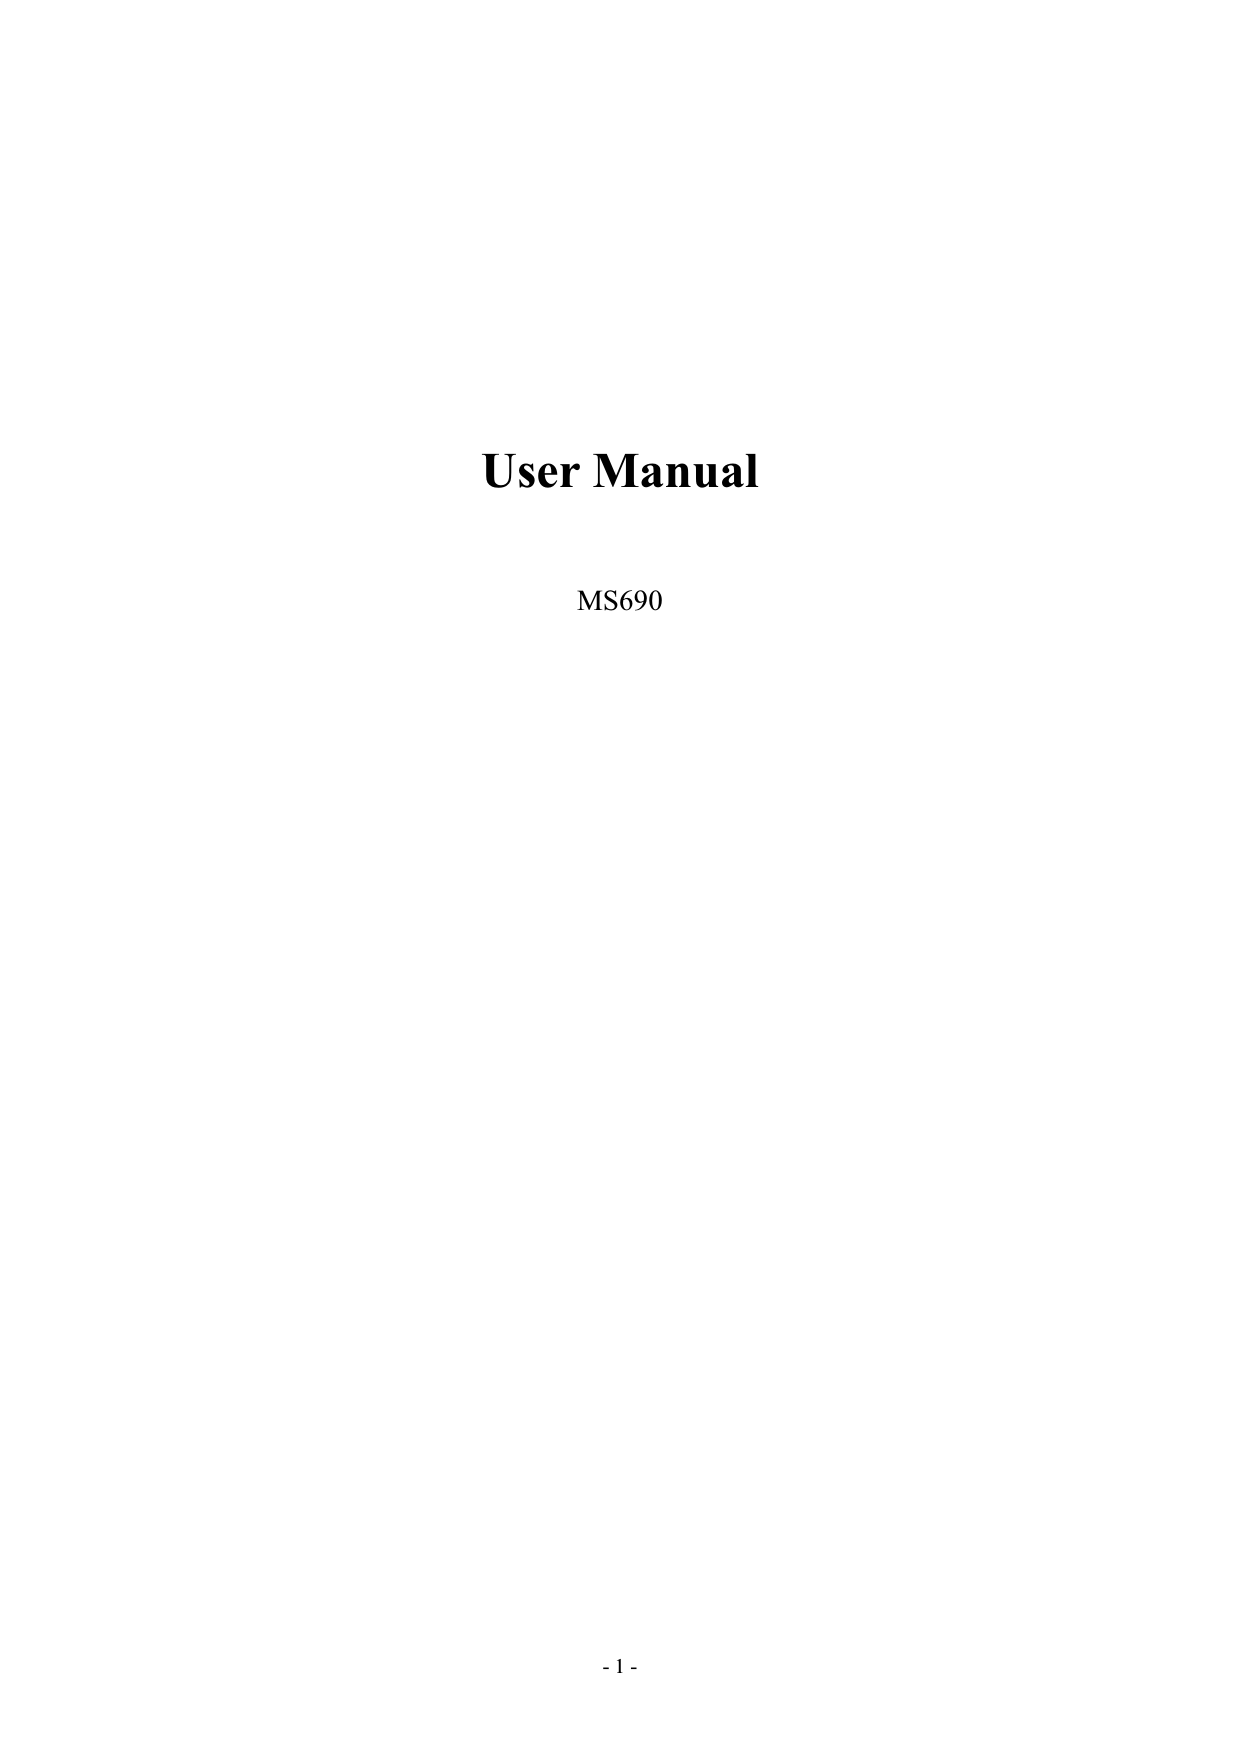 - 1 - User Manual MS690